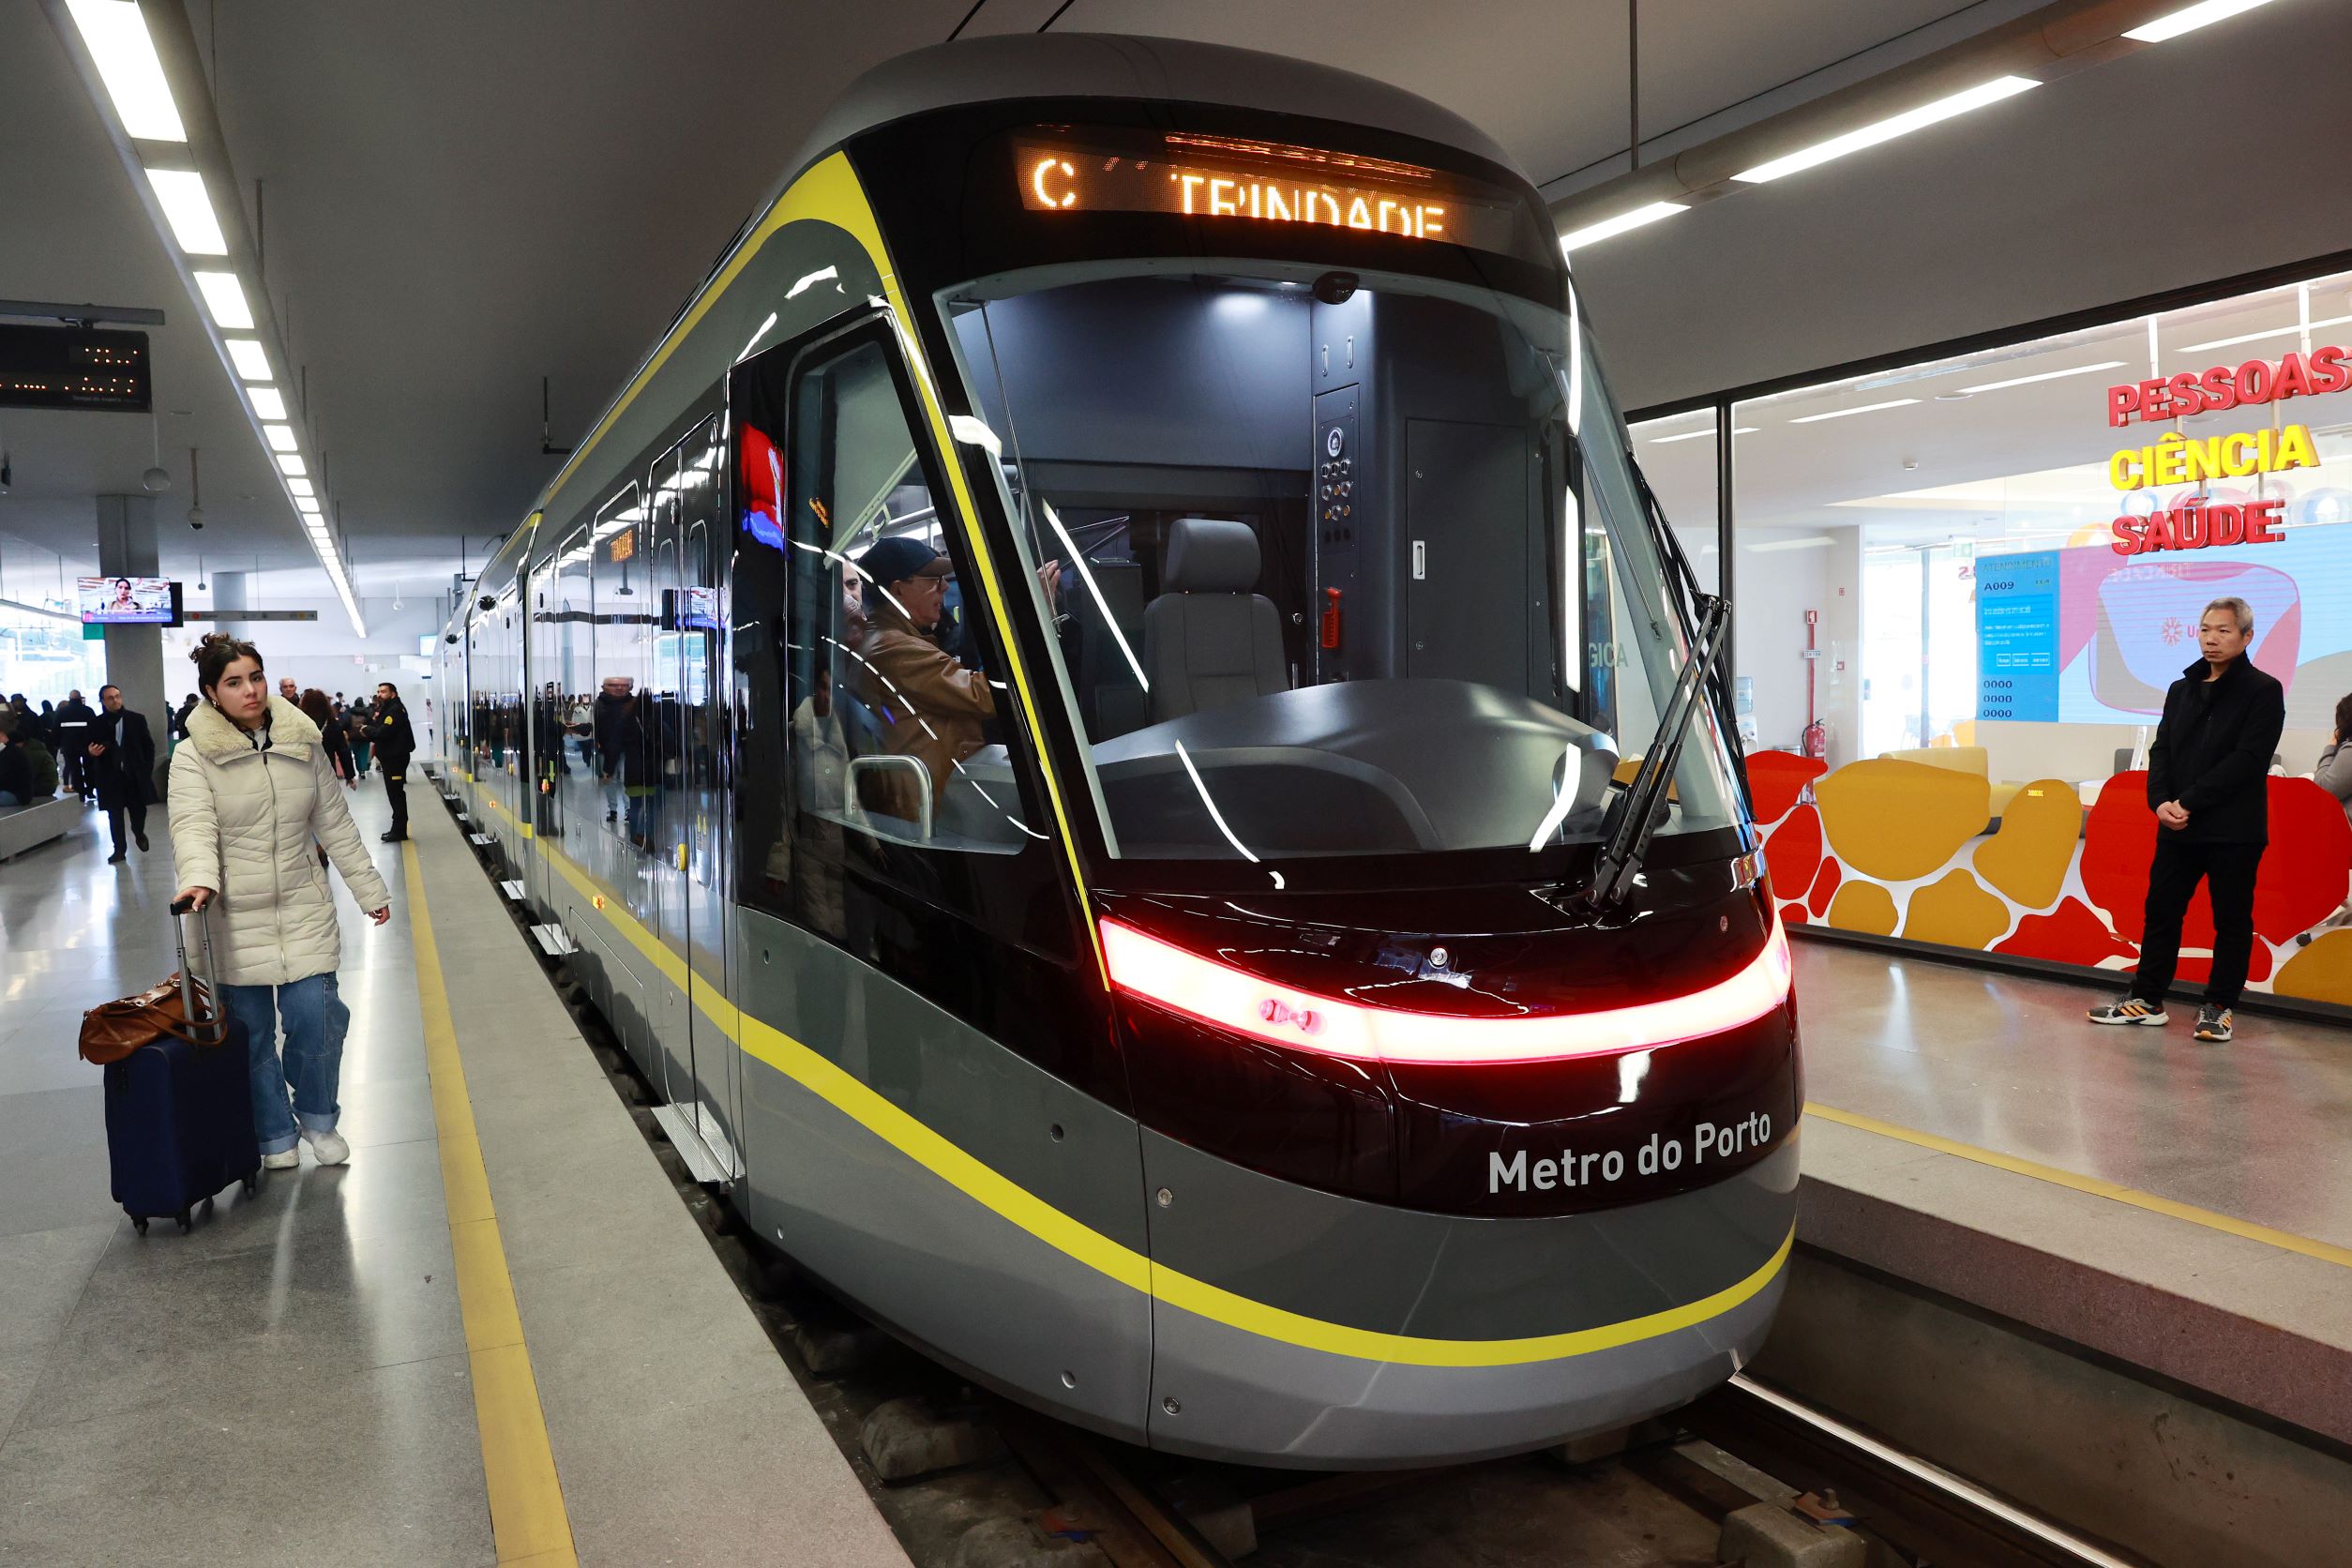 Train in Metro do Porto